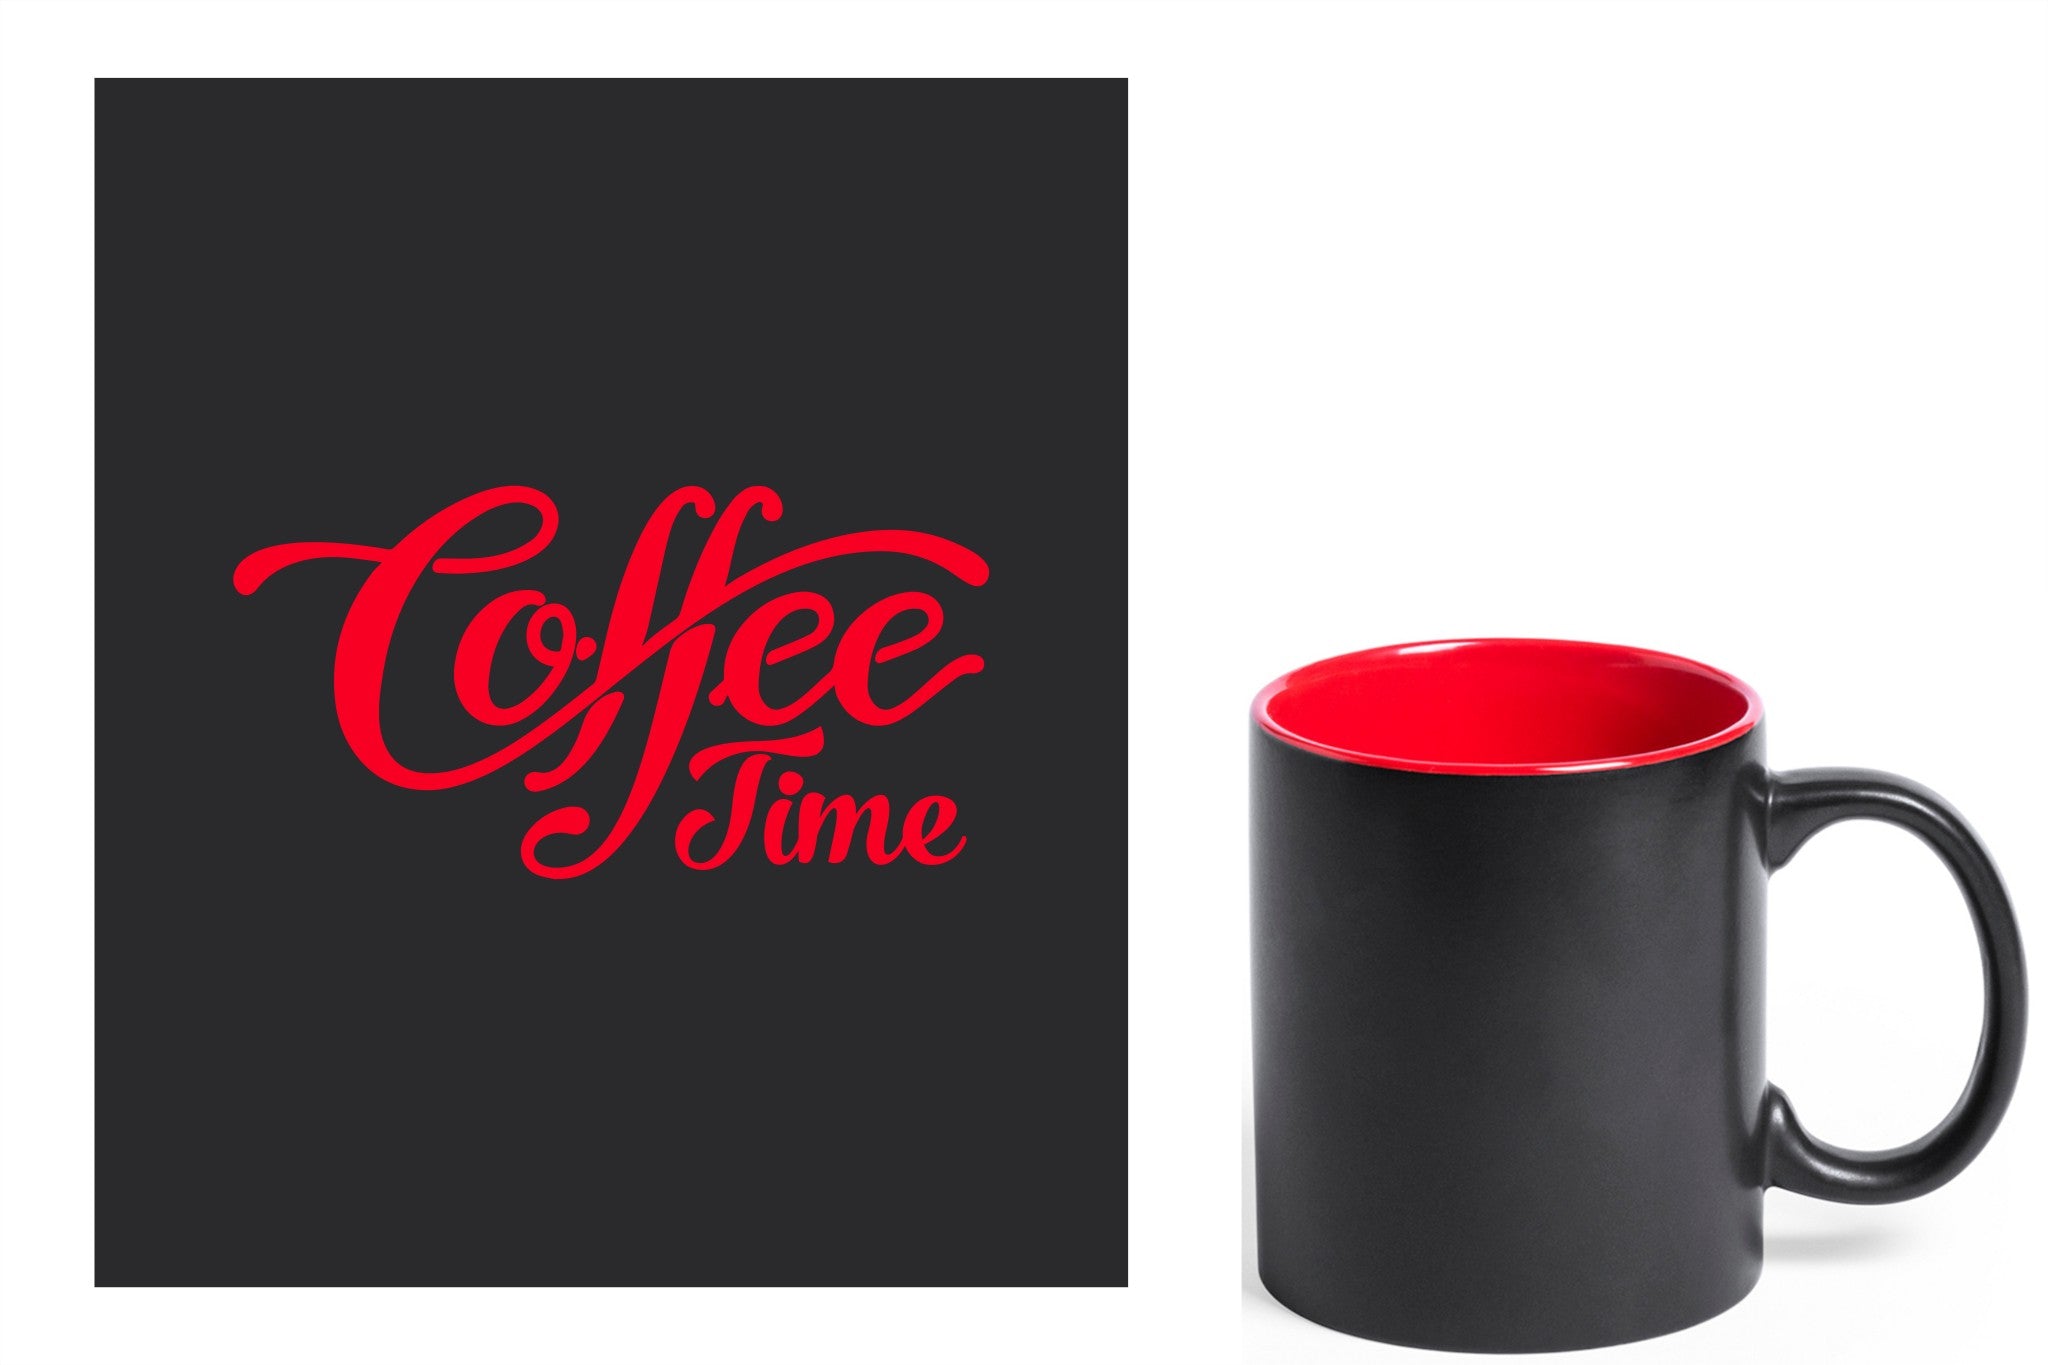 zwarte keramische mok met rode gravure  'Coffee time'.